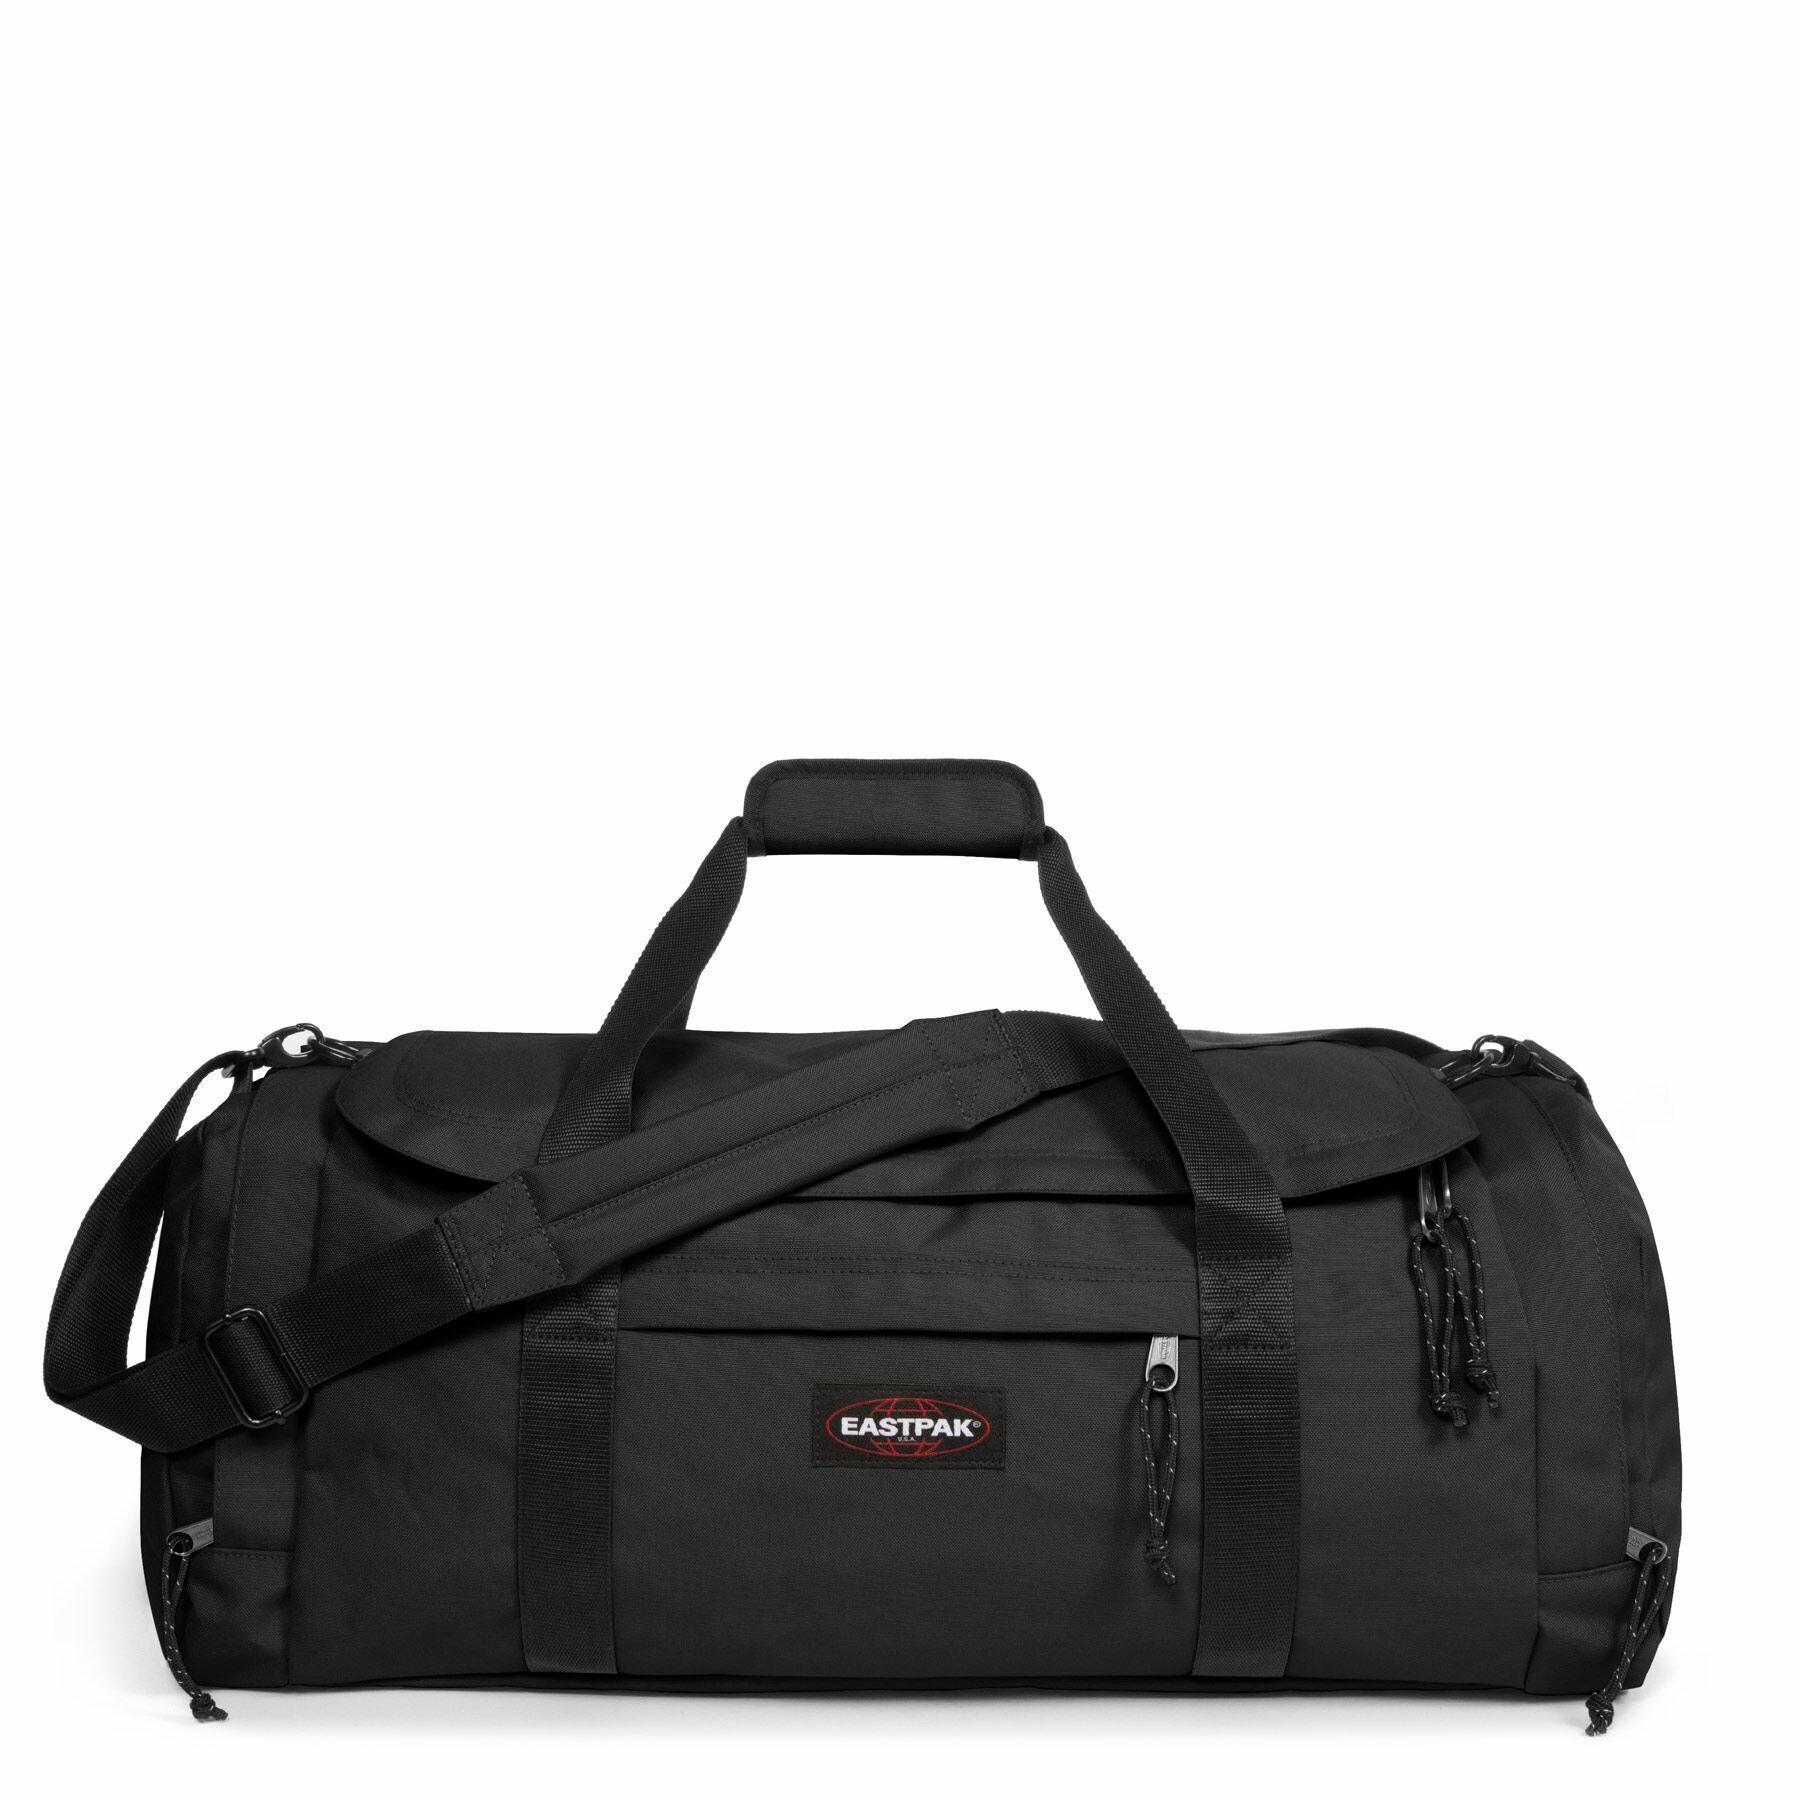 Travel bag Eastpak Reader M Plus